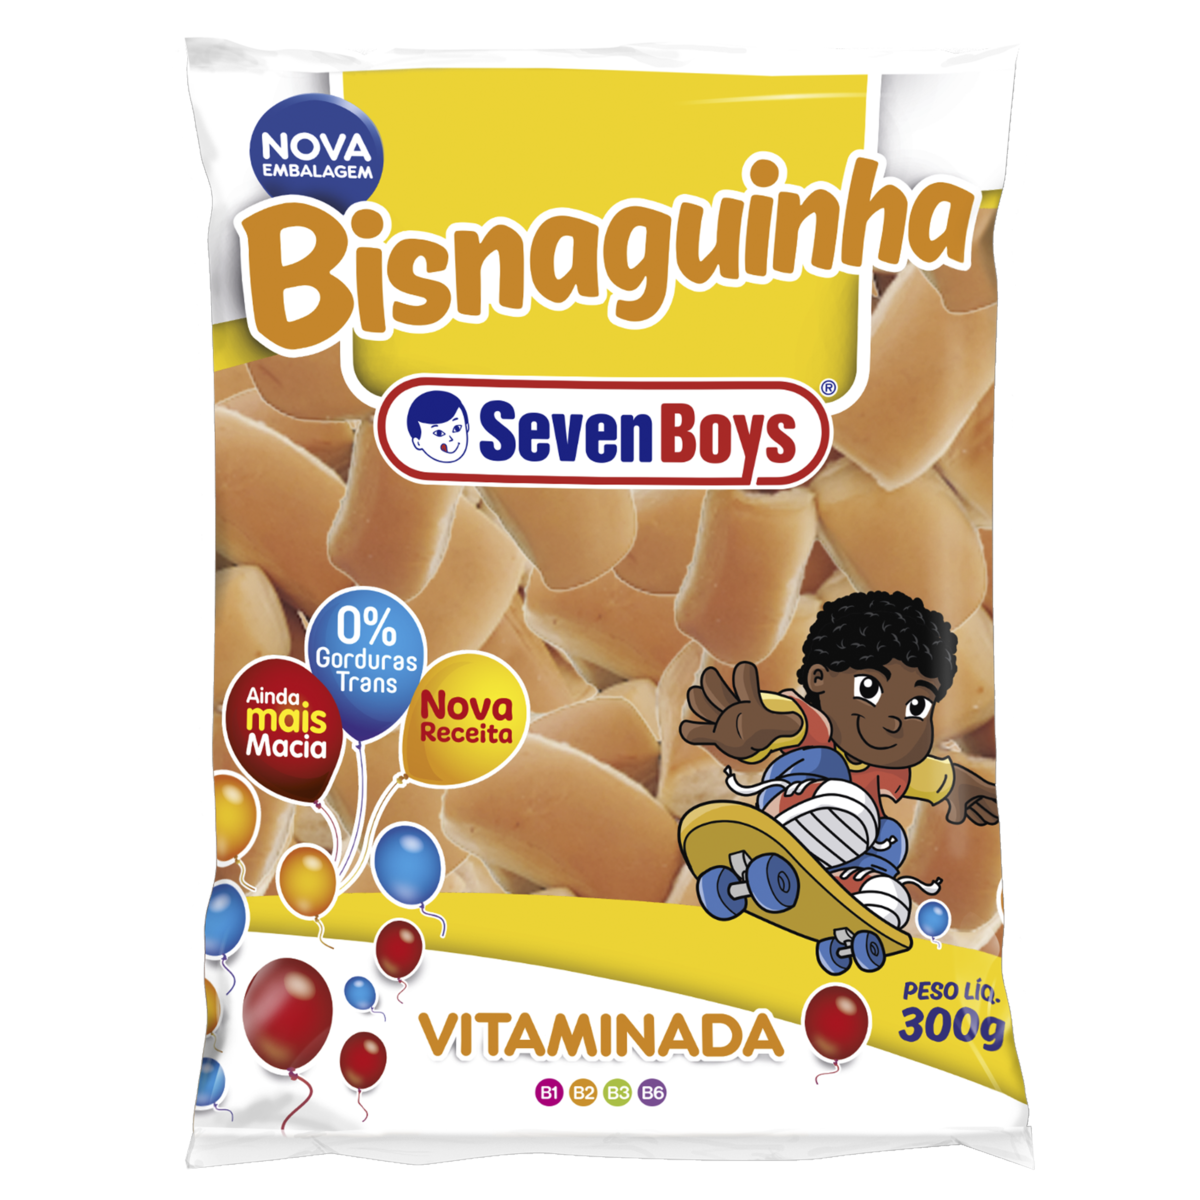 7891193010319 - PÃO BISNAGUINHA SEVEN BOYS VITAMINADA PACOTE 300G